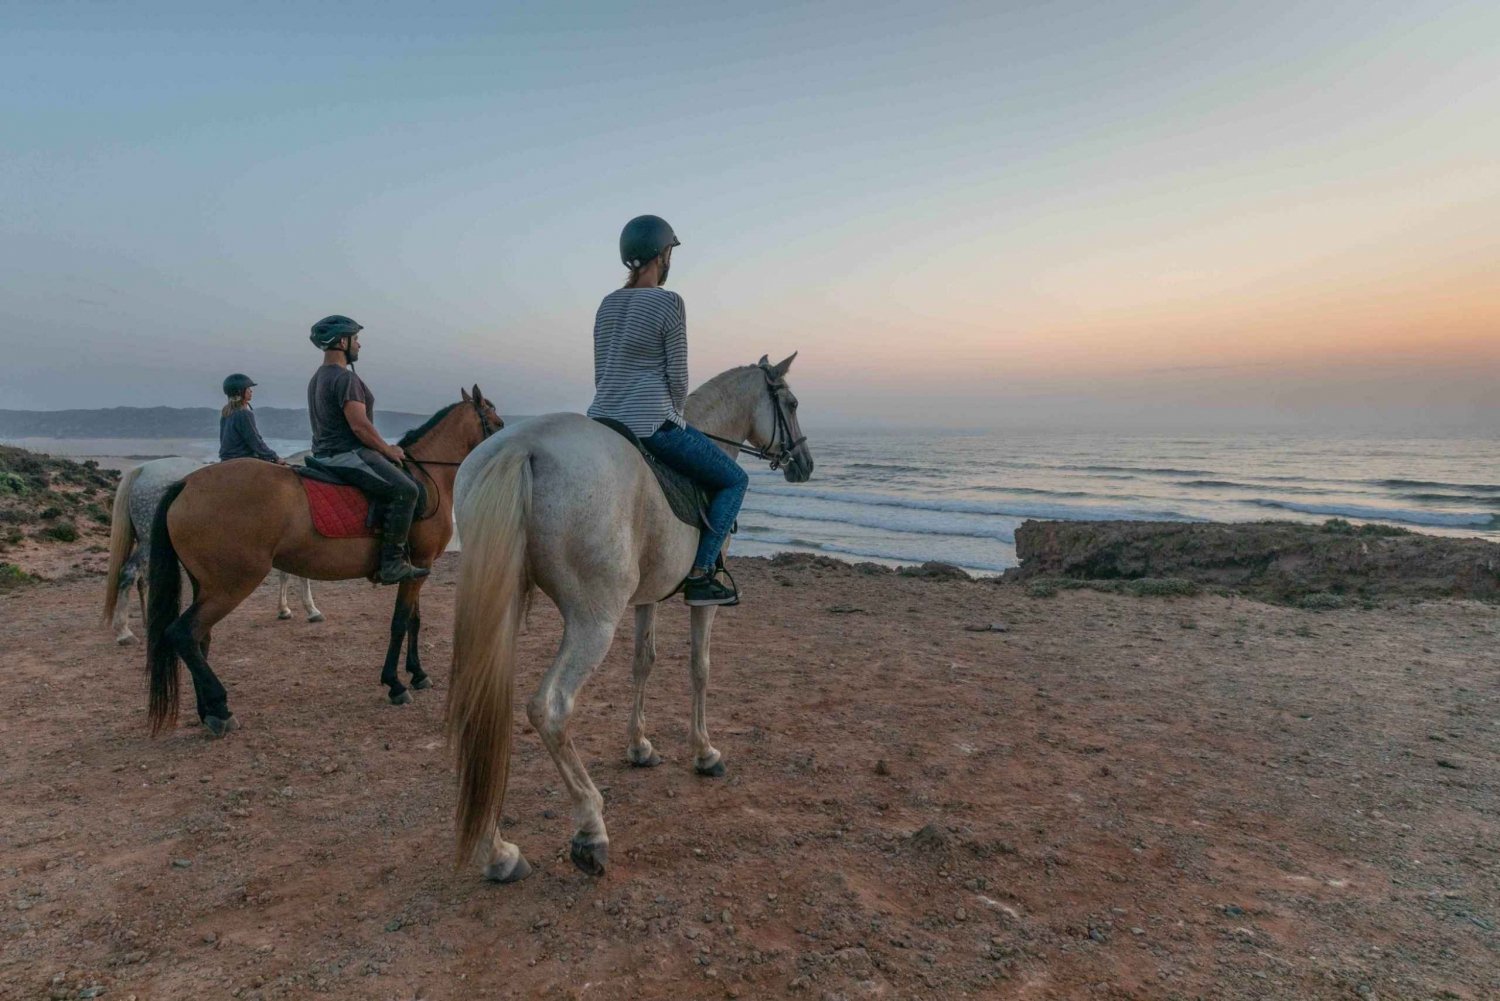 Algarve: Ratsastusretki rannalla auringonlaskun aikaan tai aamulla